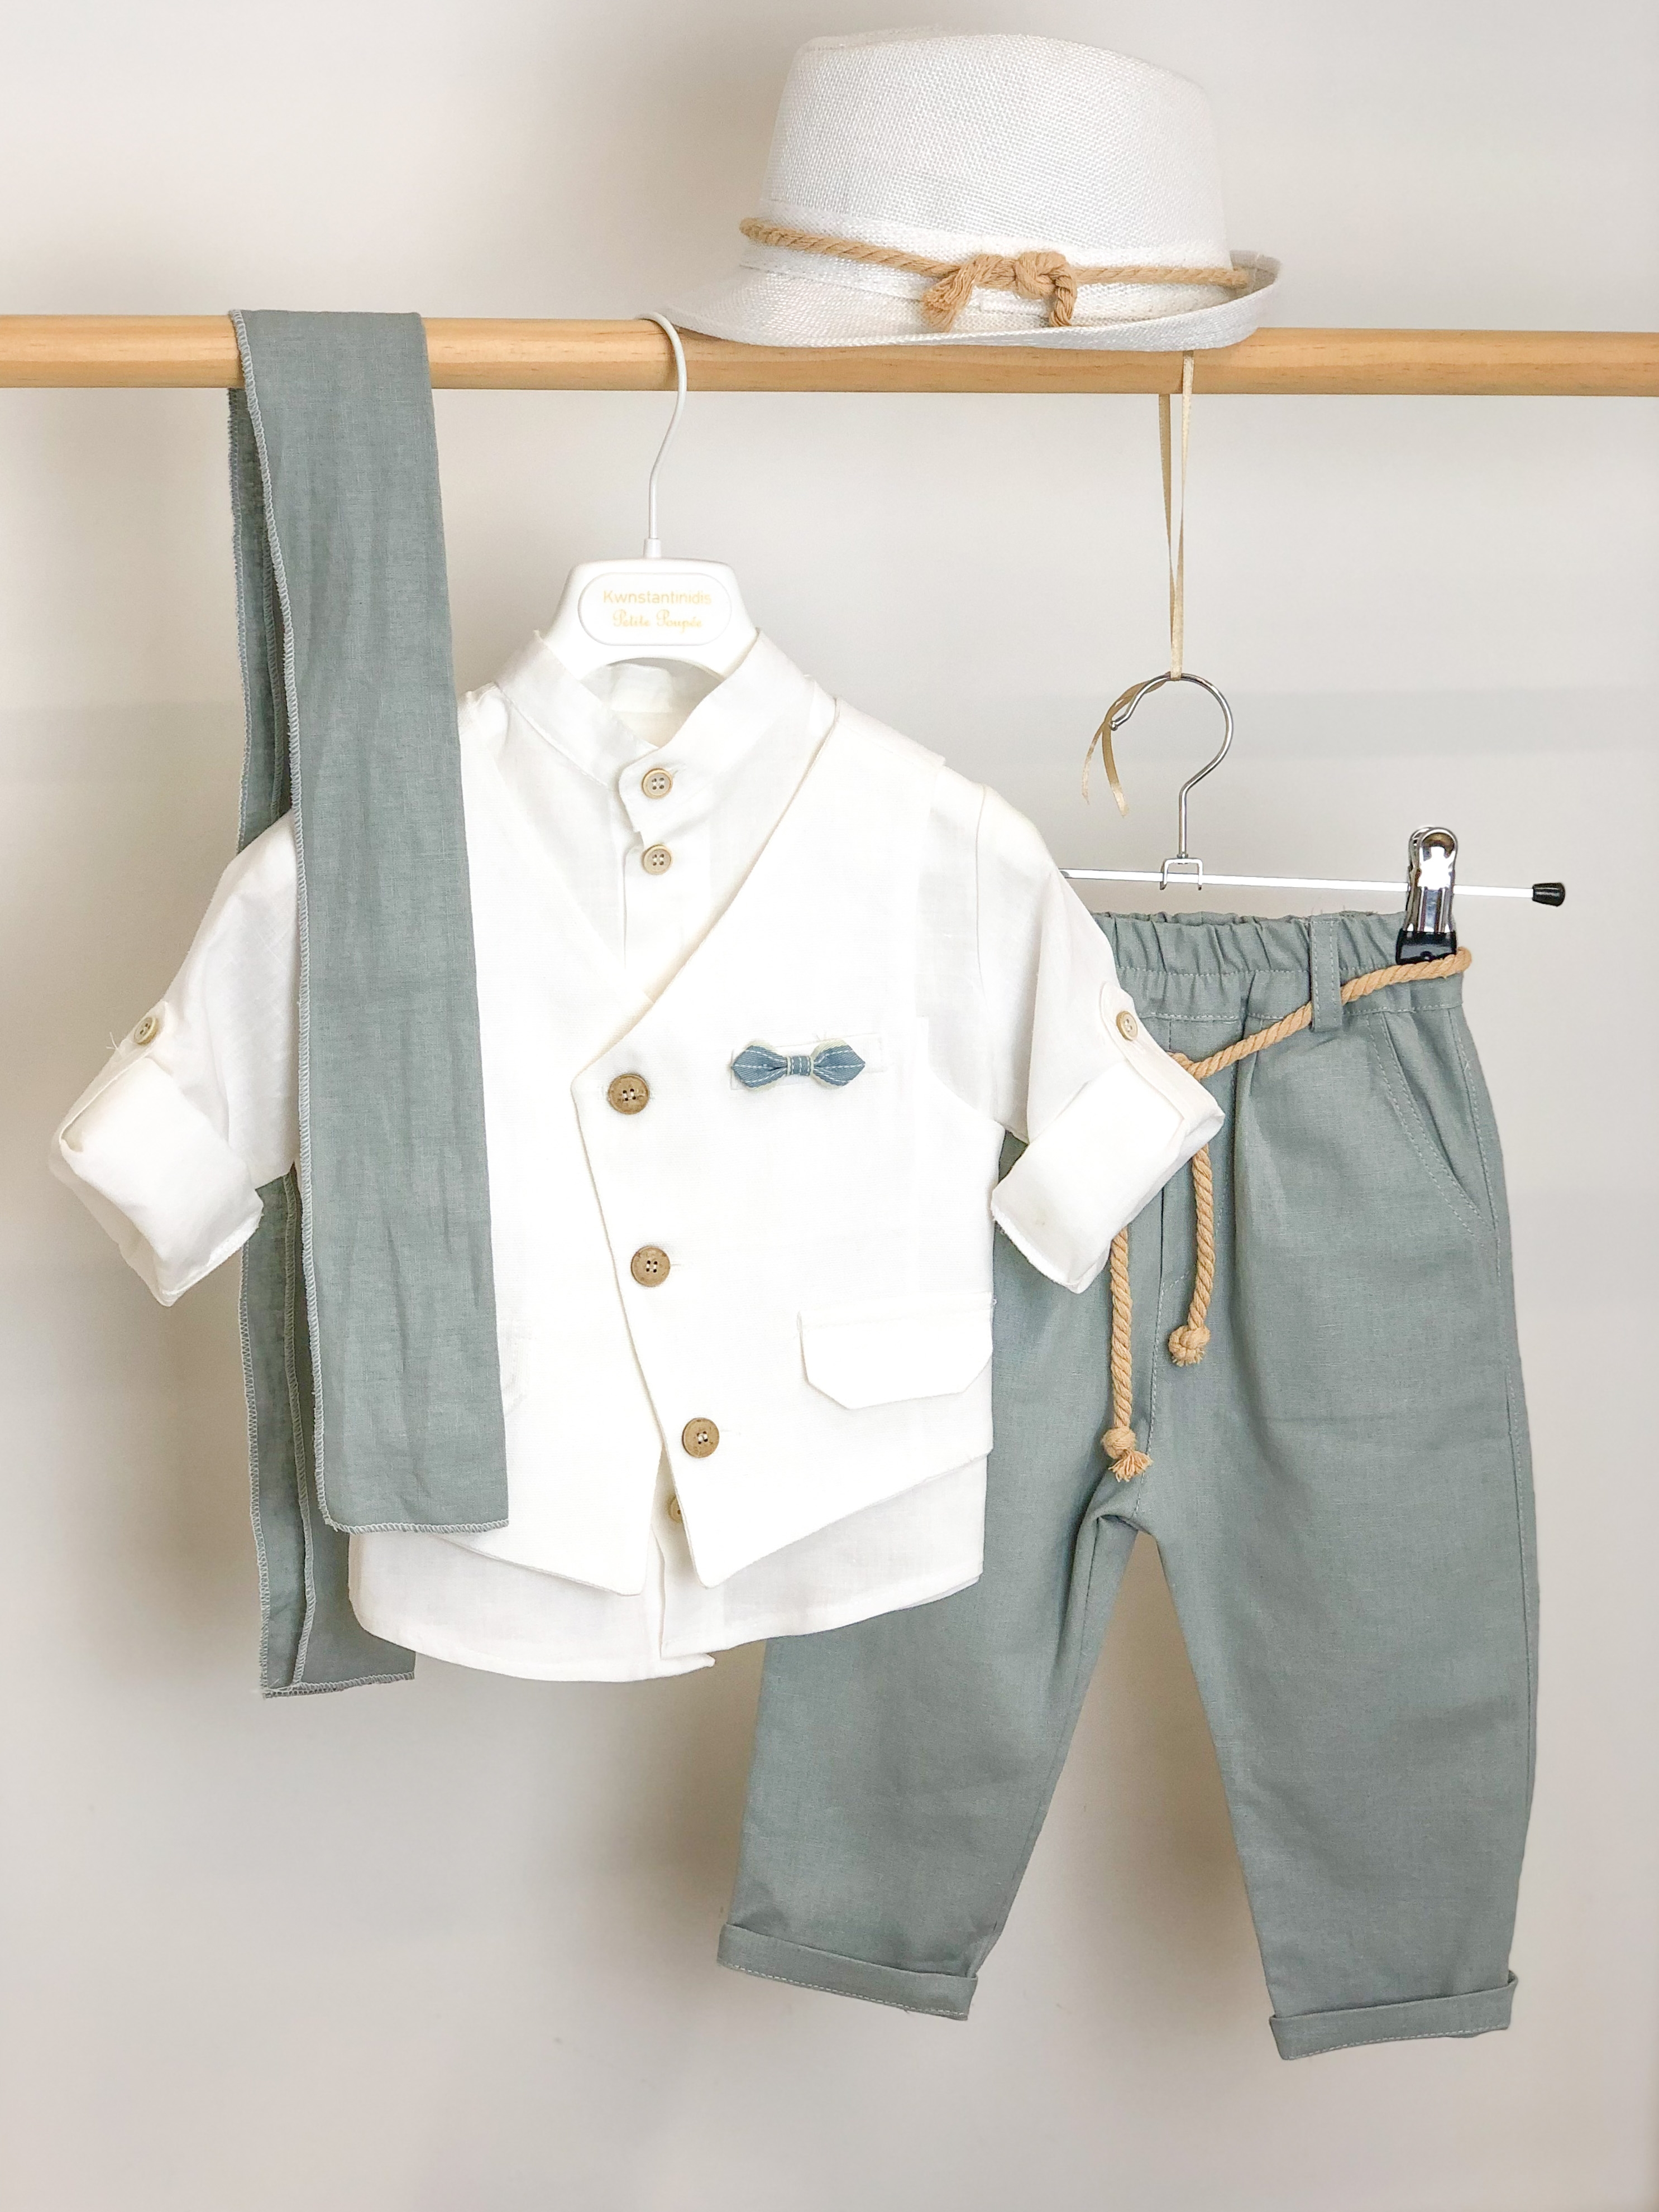 βαπτιστικά ρούχα για αγόρι μέντα λευκό λινό βαμβακερό πουκάμισο χωρίς γιακά μάο λοξό γιλέκο φουλάρι : 1